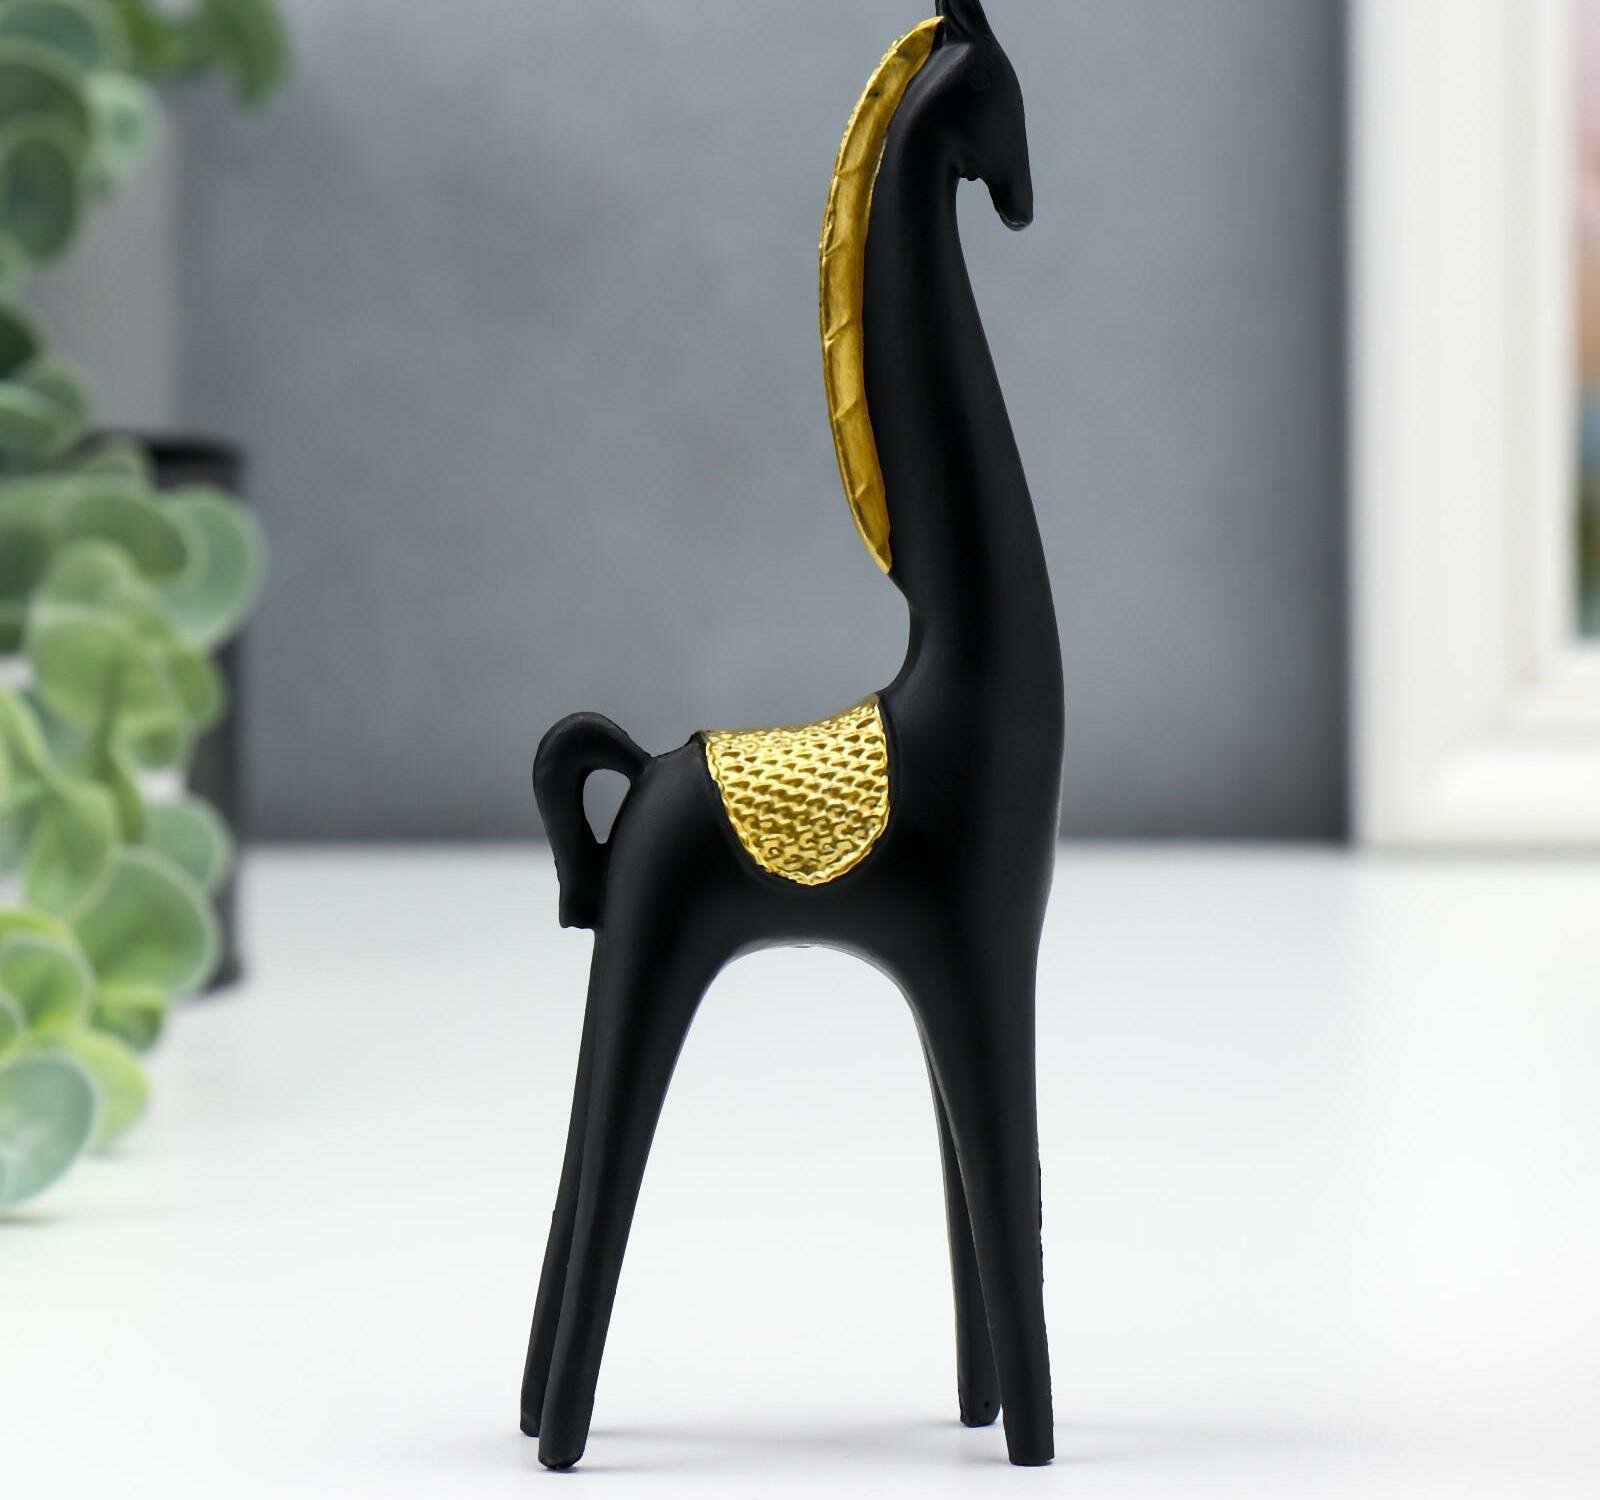 Сувенир полистоун "Чёрный конь с золотой гривой" 15х2,5х5 см